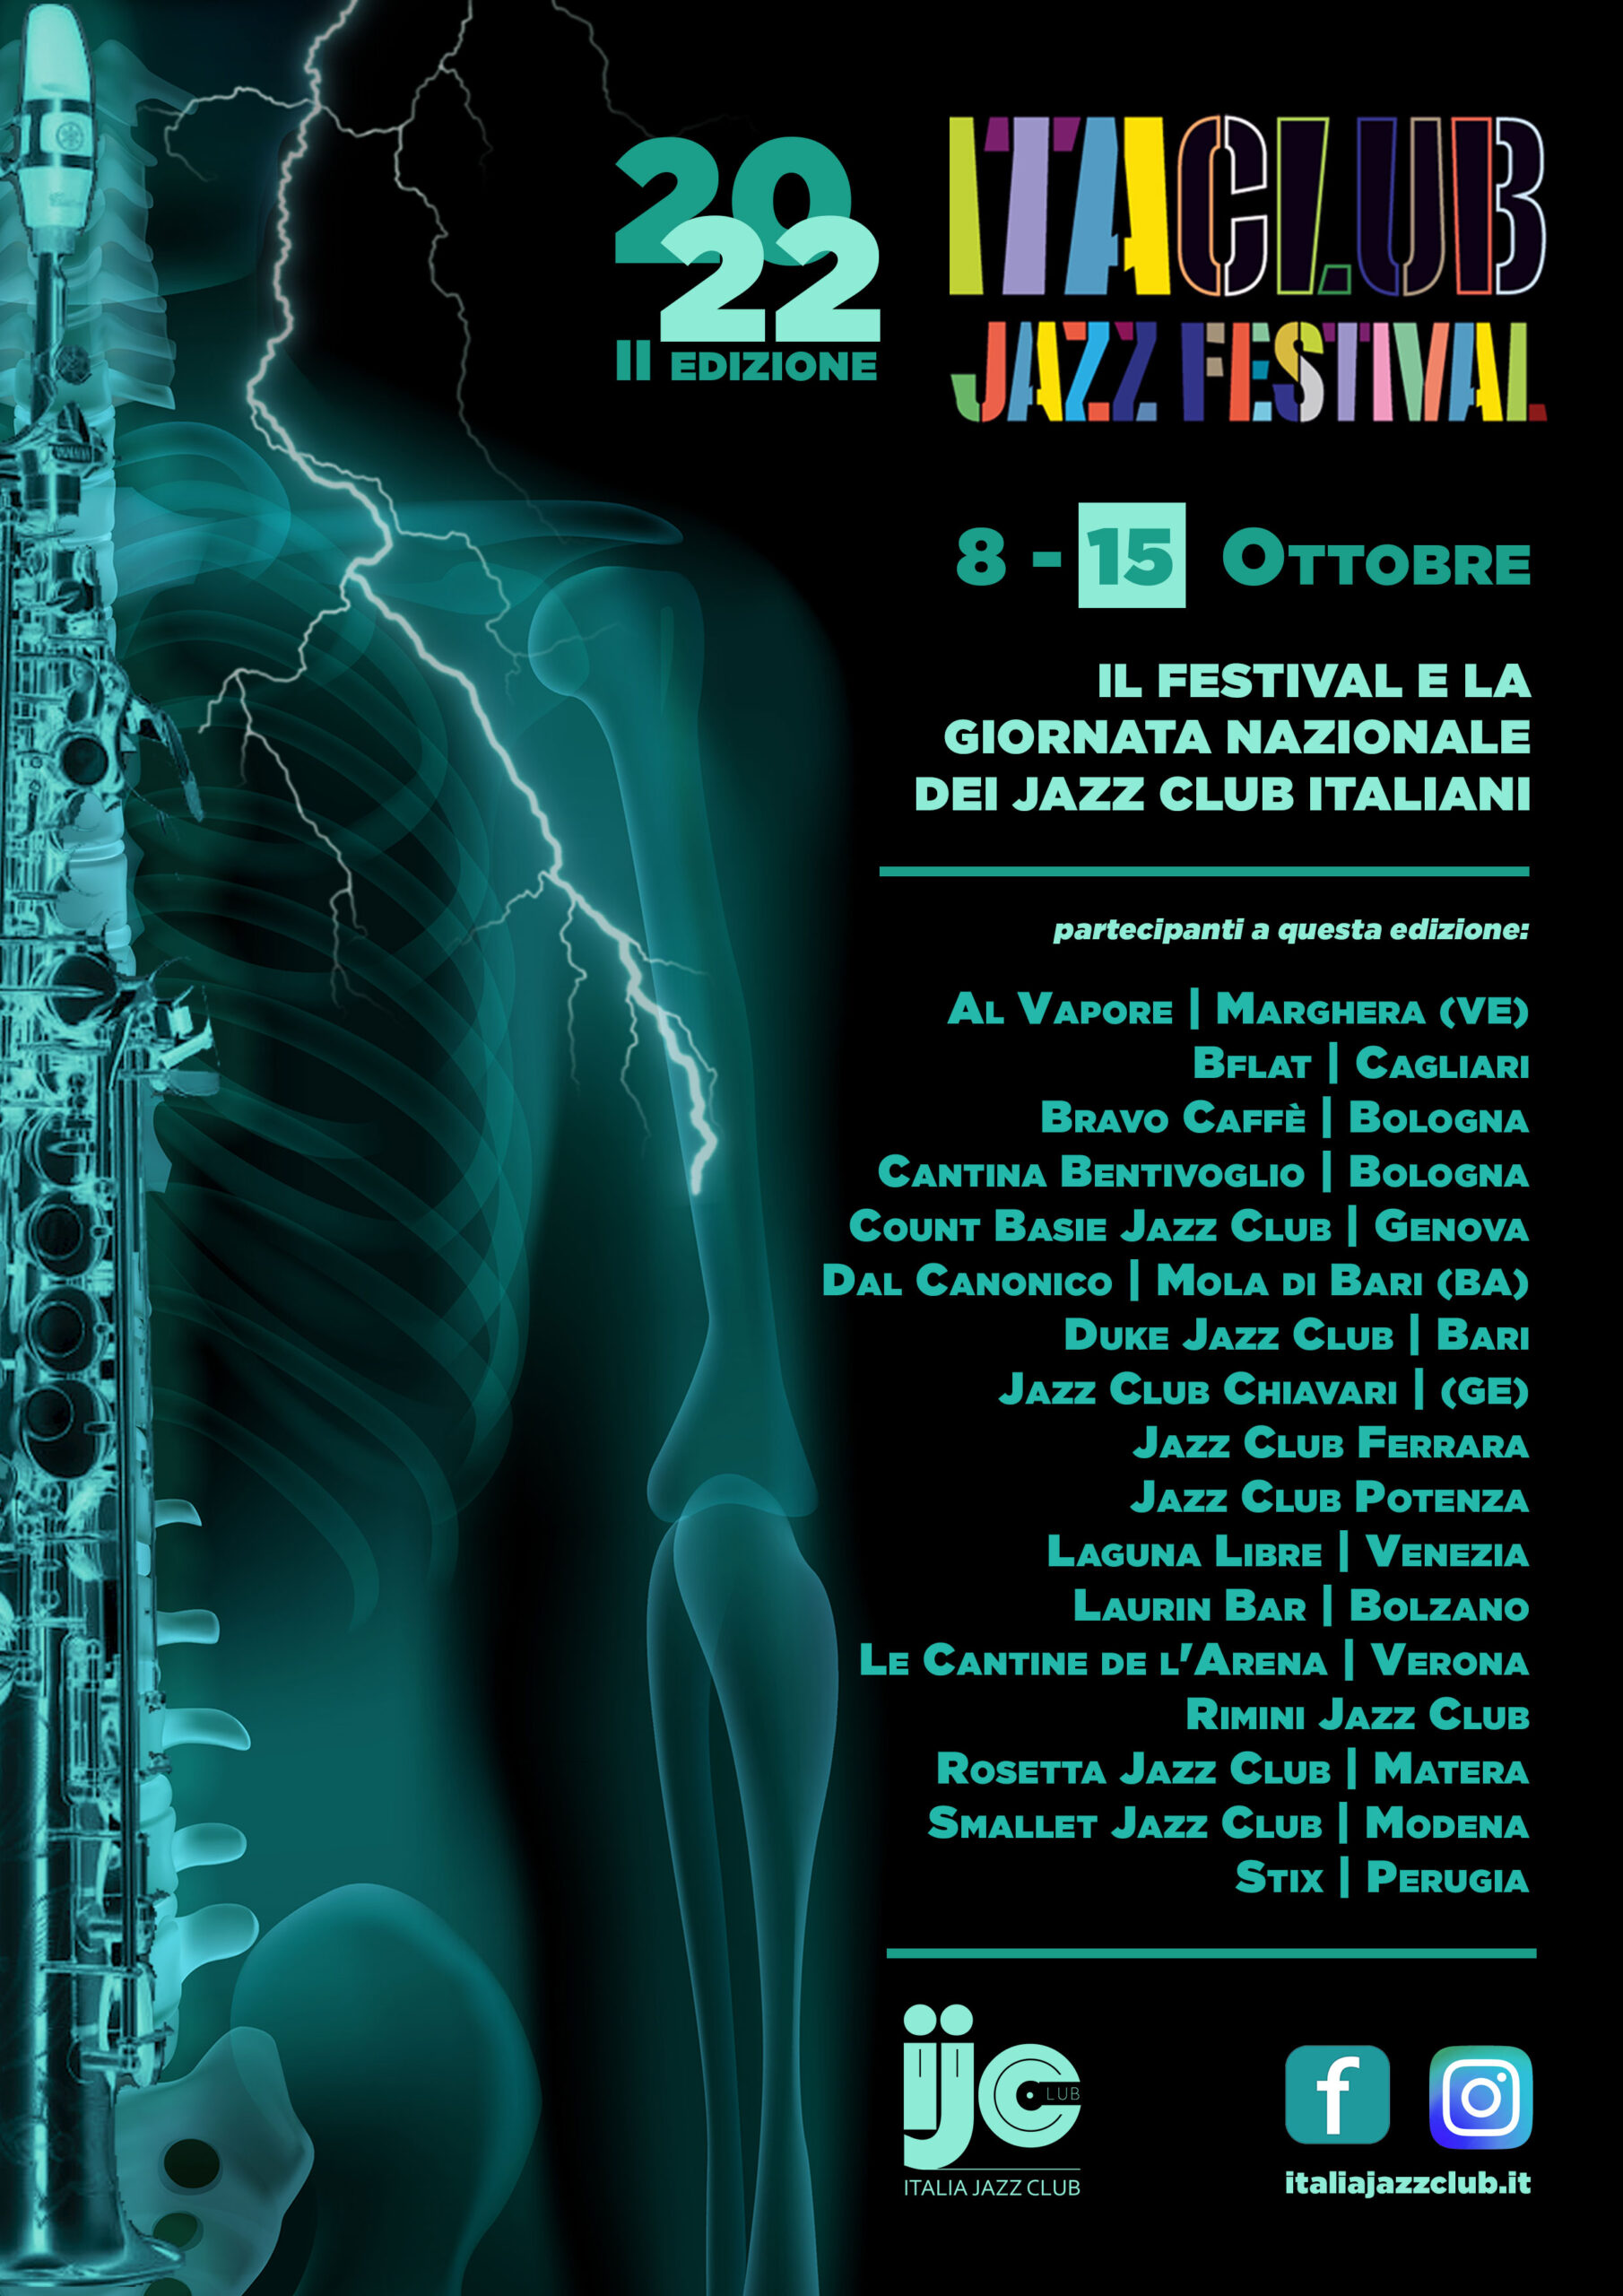 Il programma completo di Itaclub Jazz Festival e della Giornata Nazionale dei Jazz Club – 08 > 15 ottobre 2022